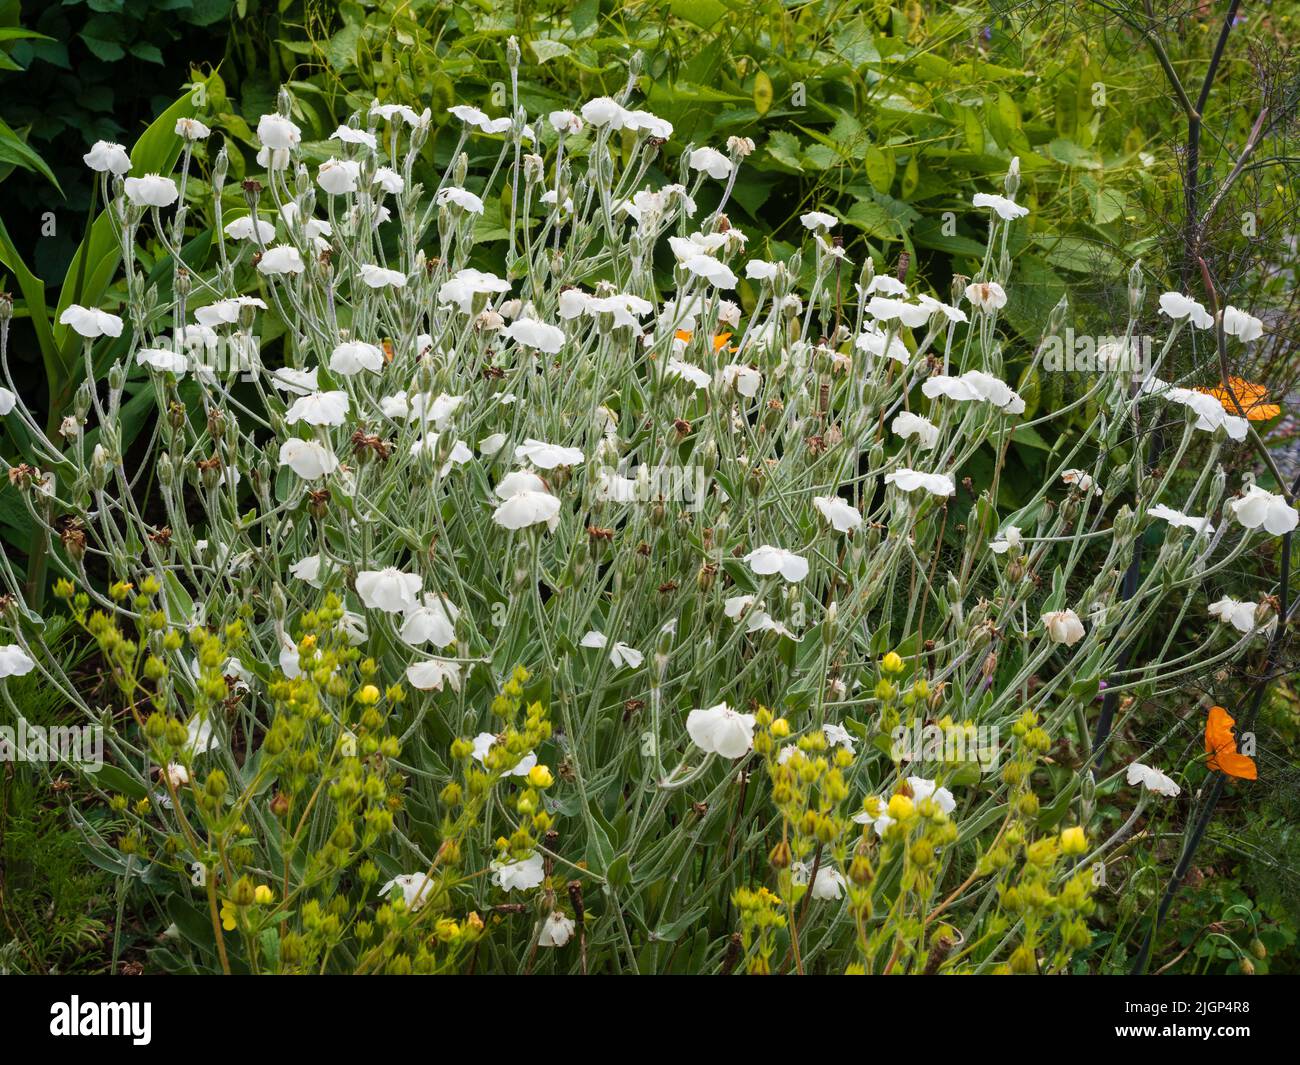 Flores blancas de la perenne jardín de la cabaña de hojas plateadas, Lychnis coronaria 'Alba' Foto de stock